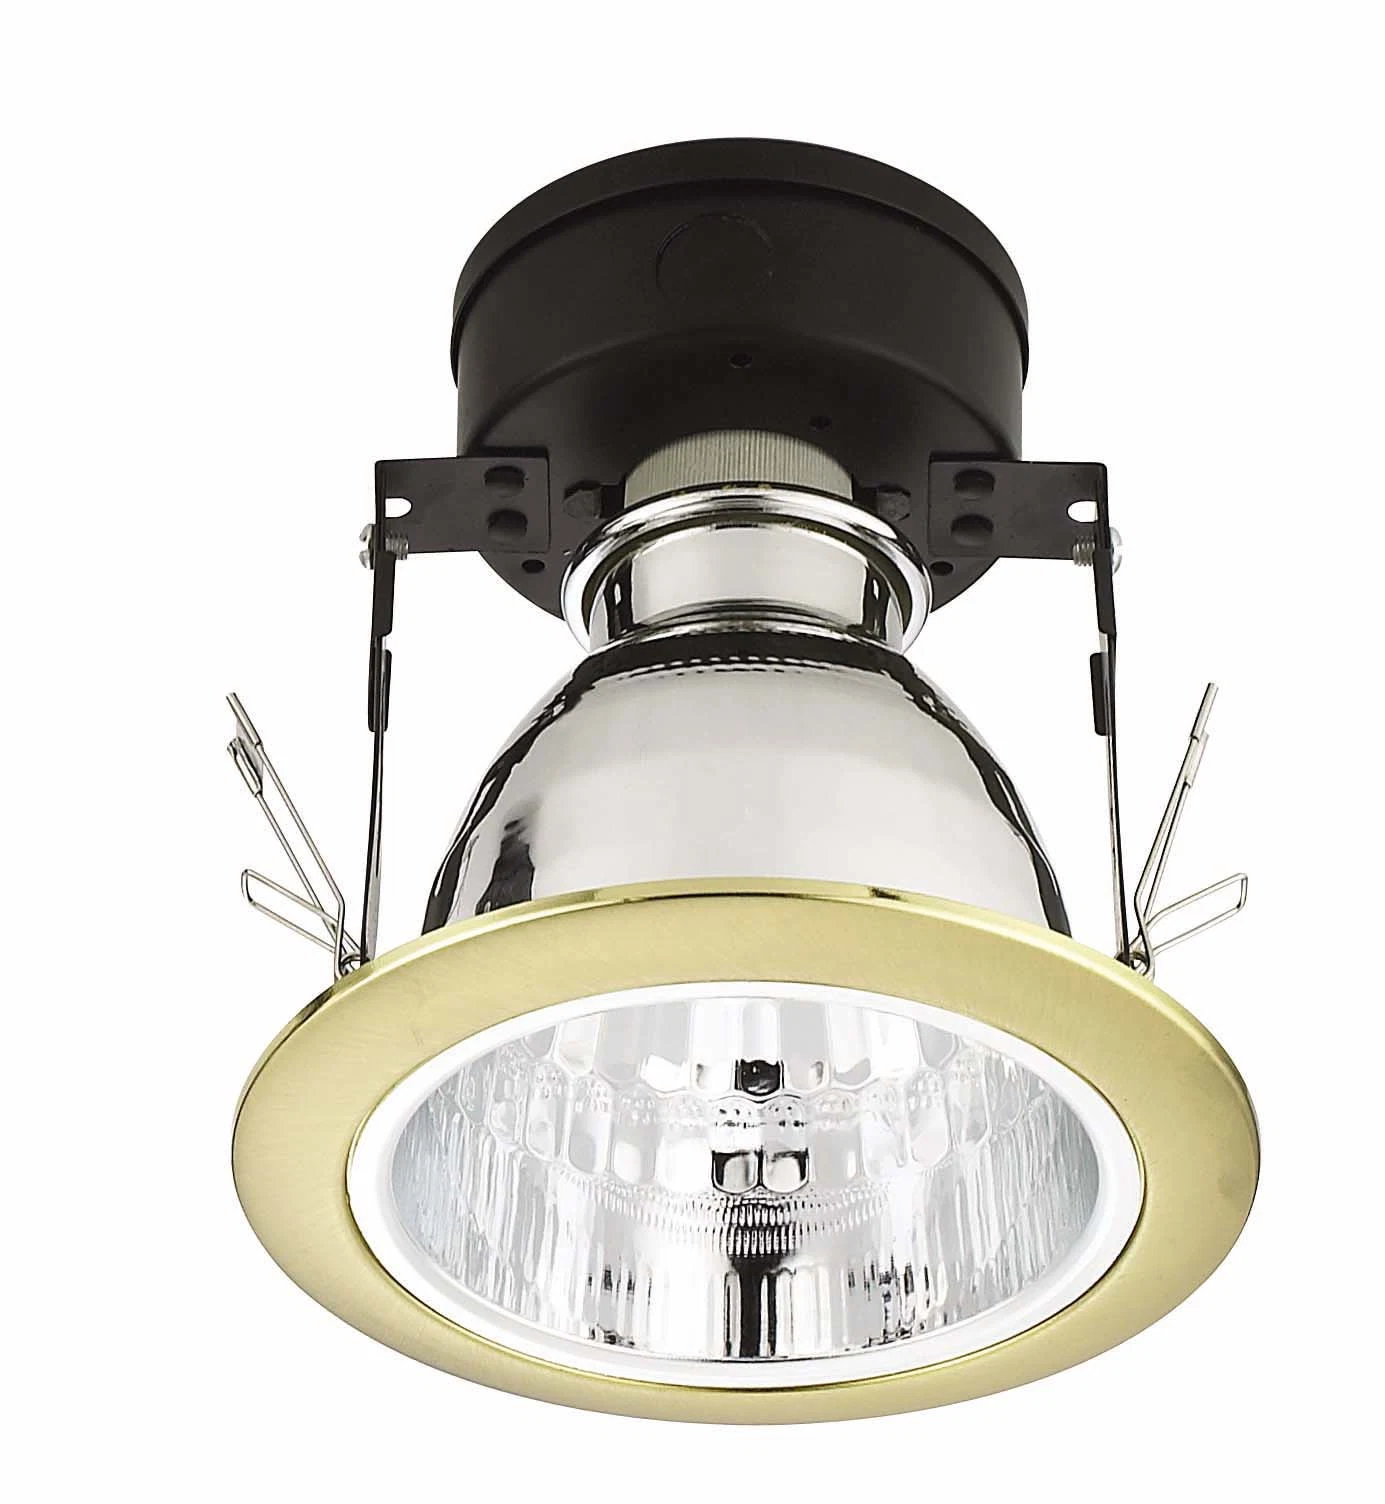 4 pouces de bas prix plafond COB Downlights LED lampe intérieure